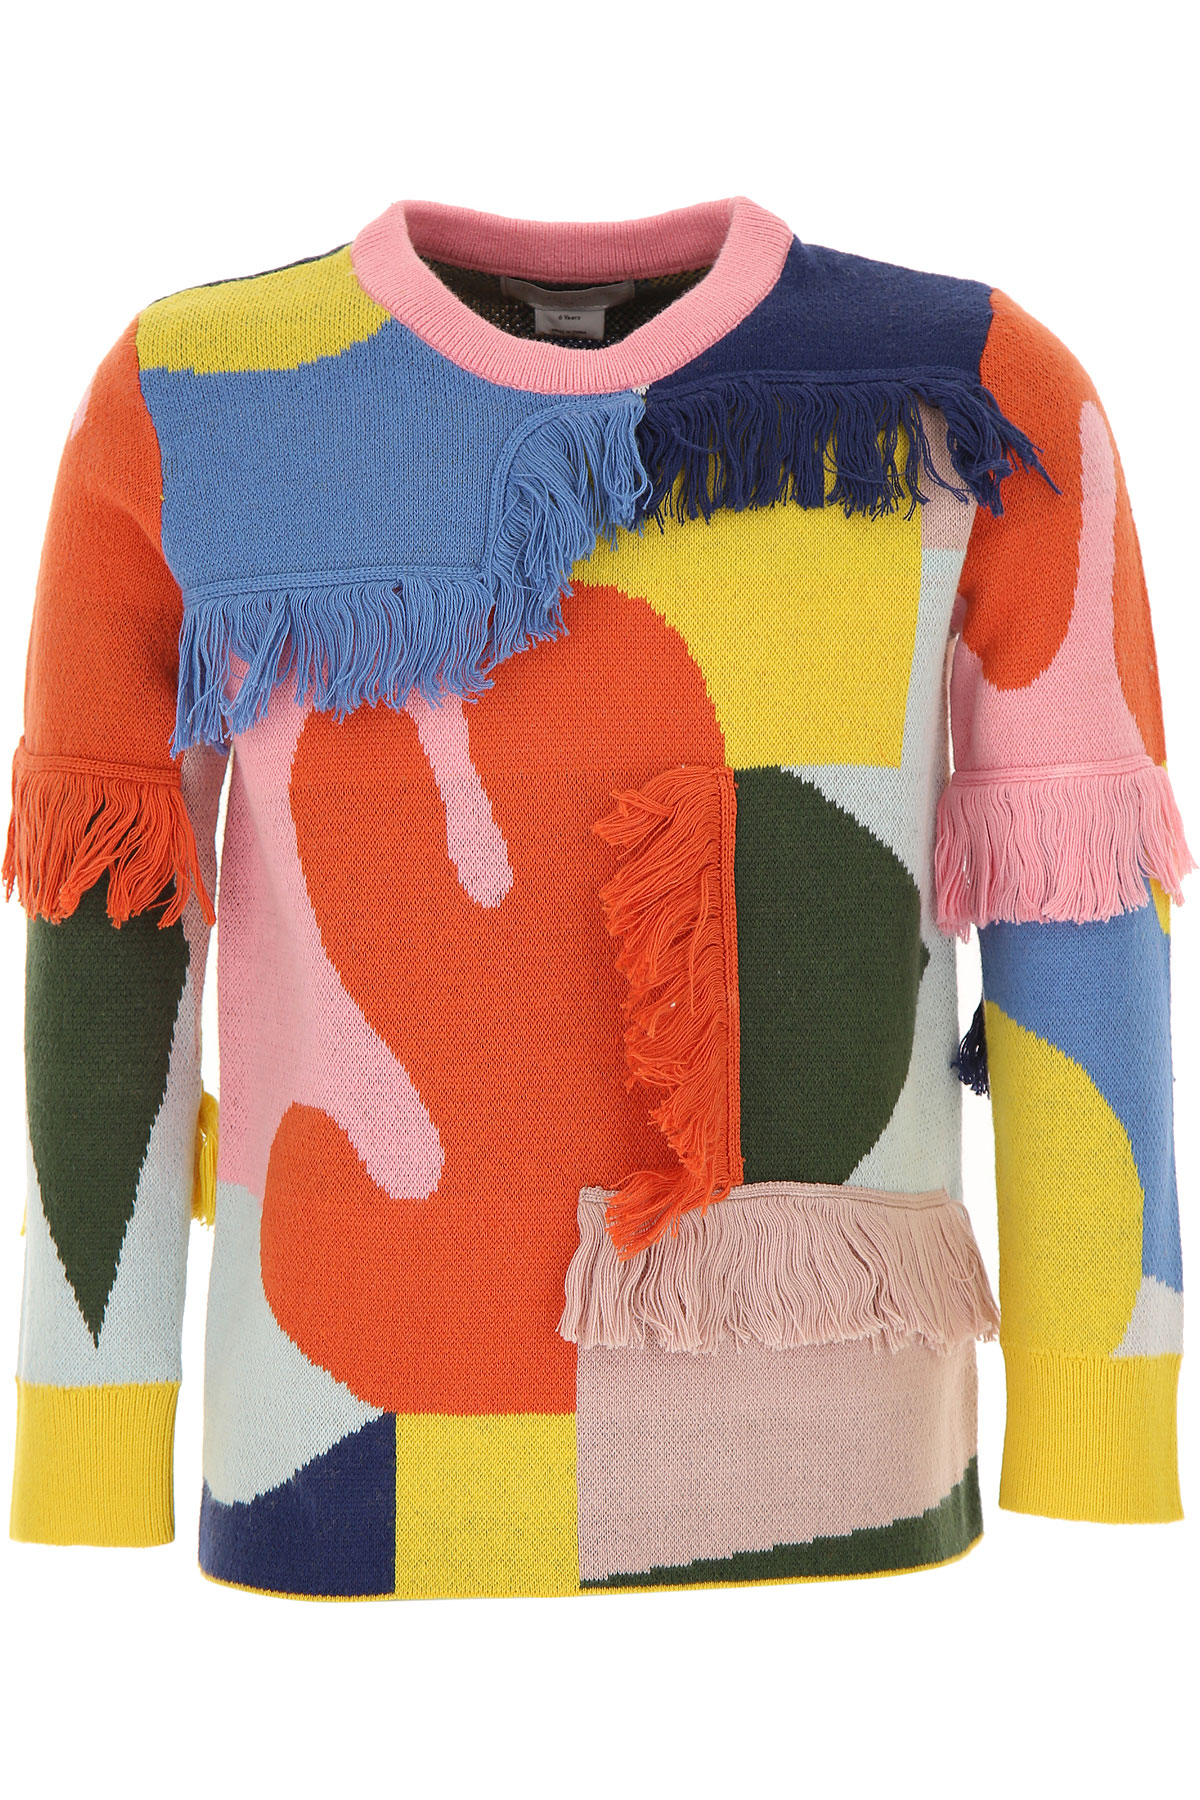 Stella McCartney Kinder Pullover für Mädchen Günstig im Sale, Mehrfarbig, Baumwolle, 2017, 10Y 6Y 8Y